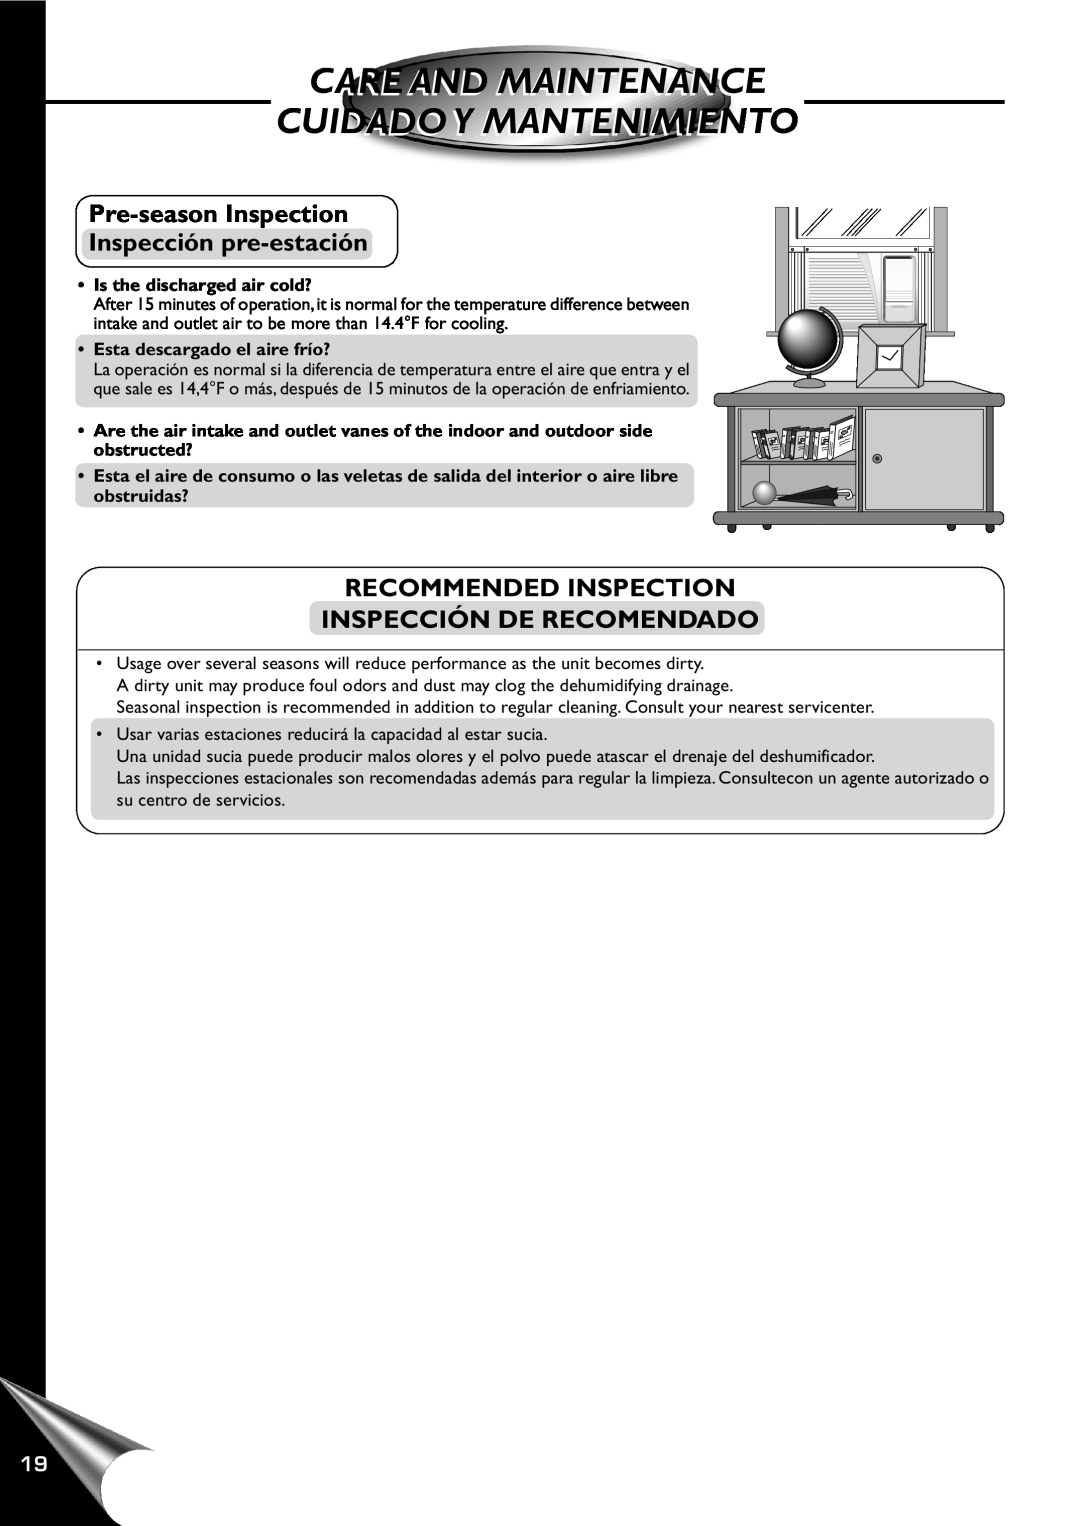 Panasonic HQ-2201SH manual Pre-seasonInspection Inspección pre-estación, Recommended Inspection Inspección De Recomendado 